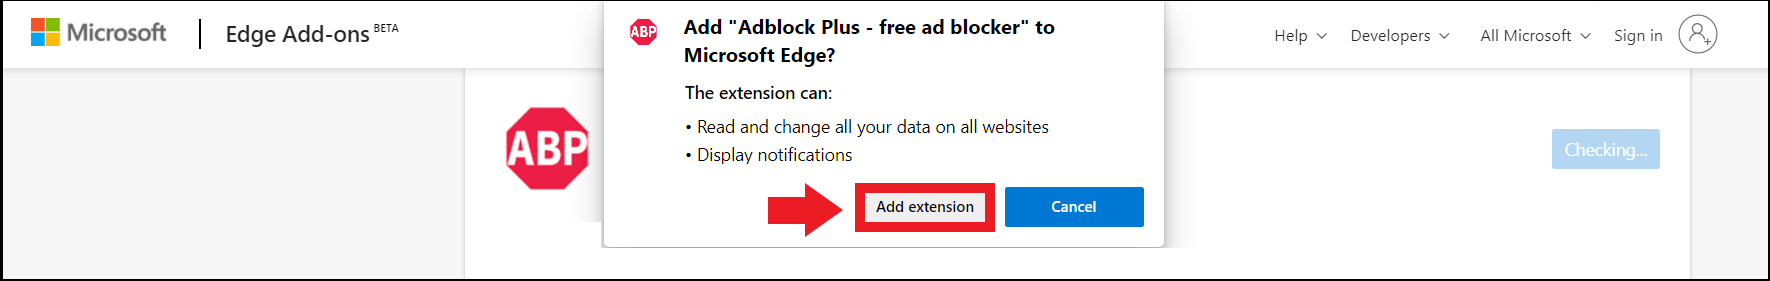 Instalación de Adblock-Plus a través de la página de complementos de Edge